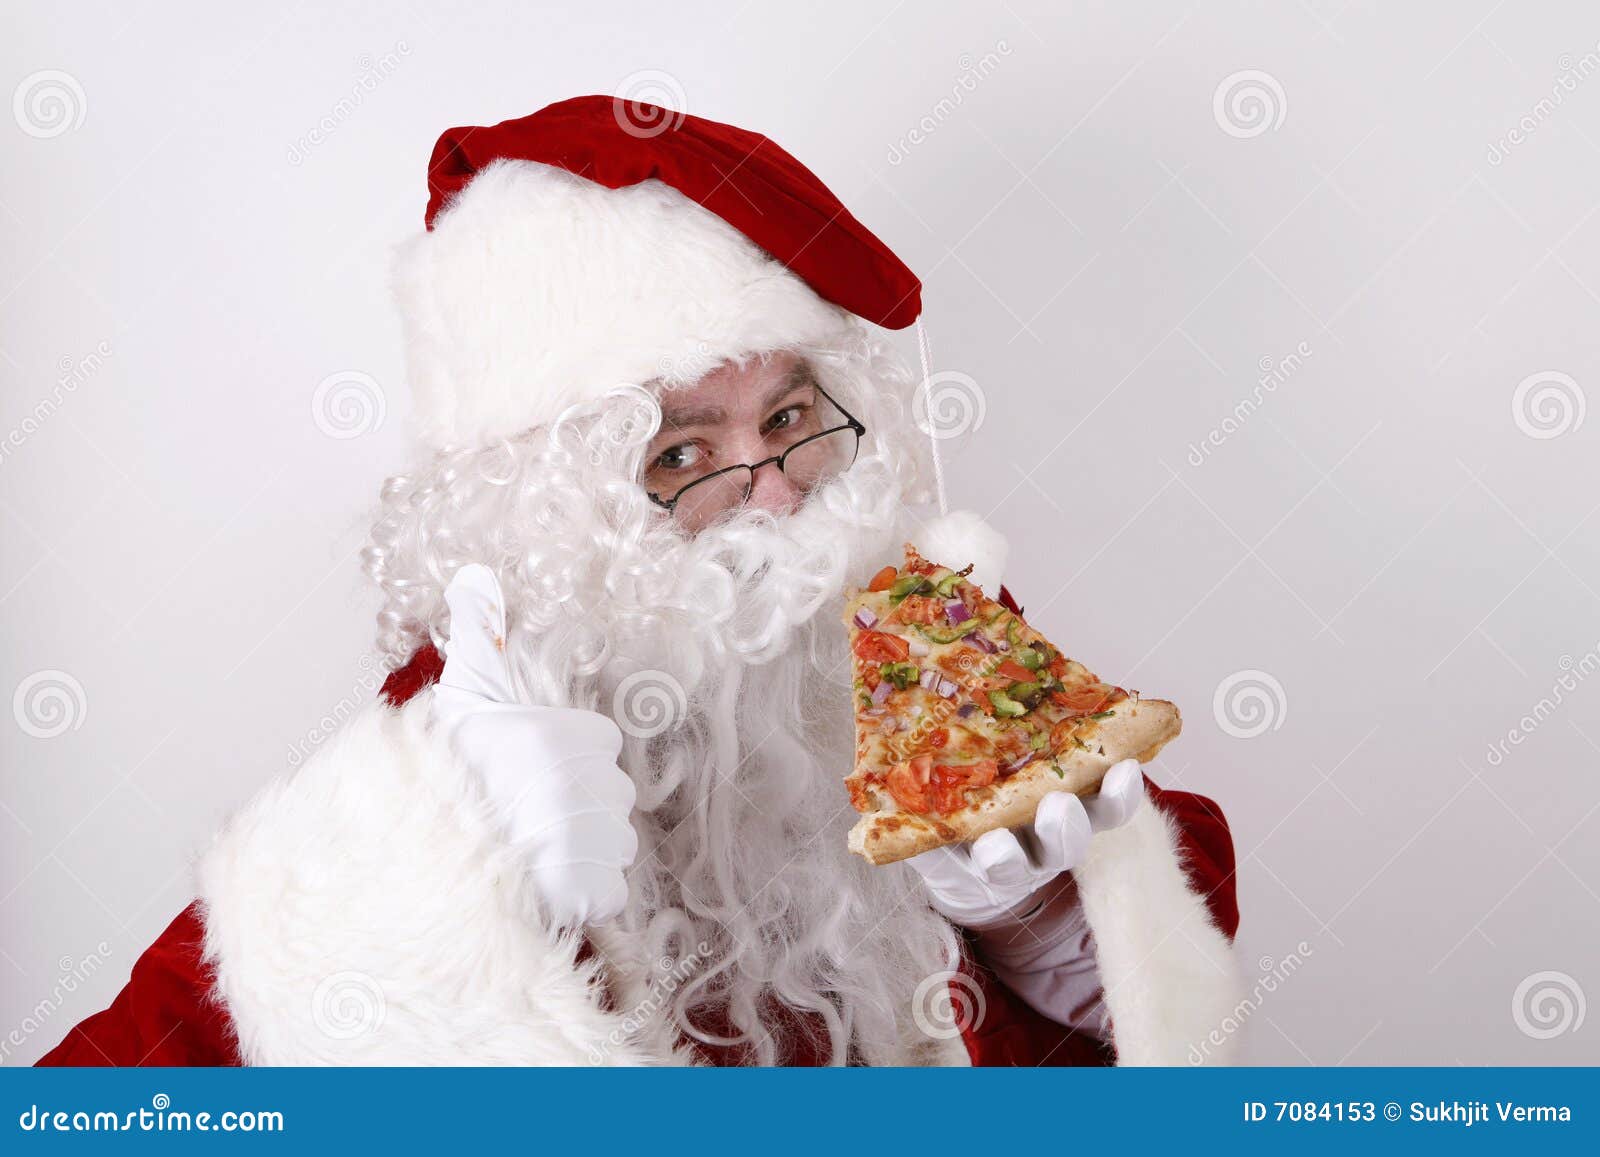 Babbo Natale Pizzeria.Il Babbo Natale Che Sorride E Che Mangia Pizza Immagine Stock Immagine Di Pizza Affamato 7084153